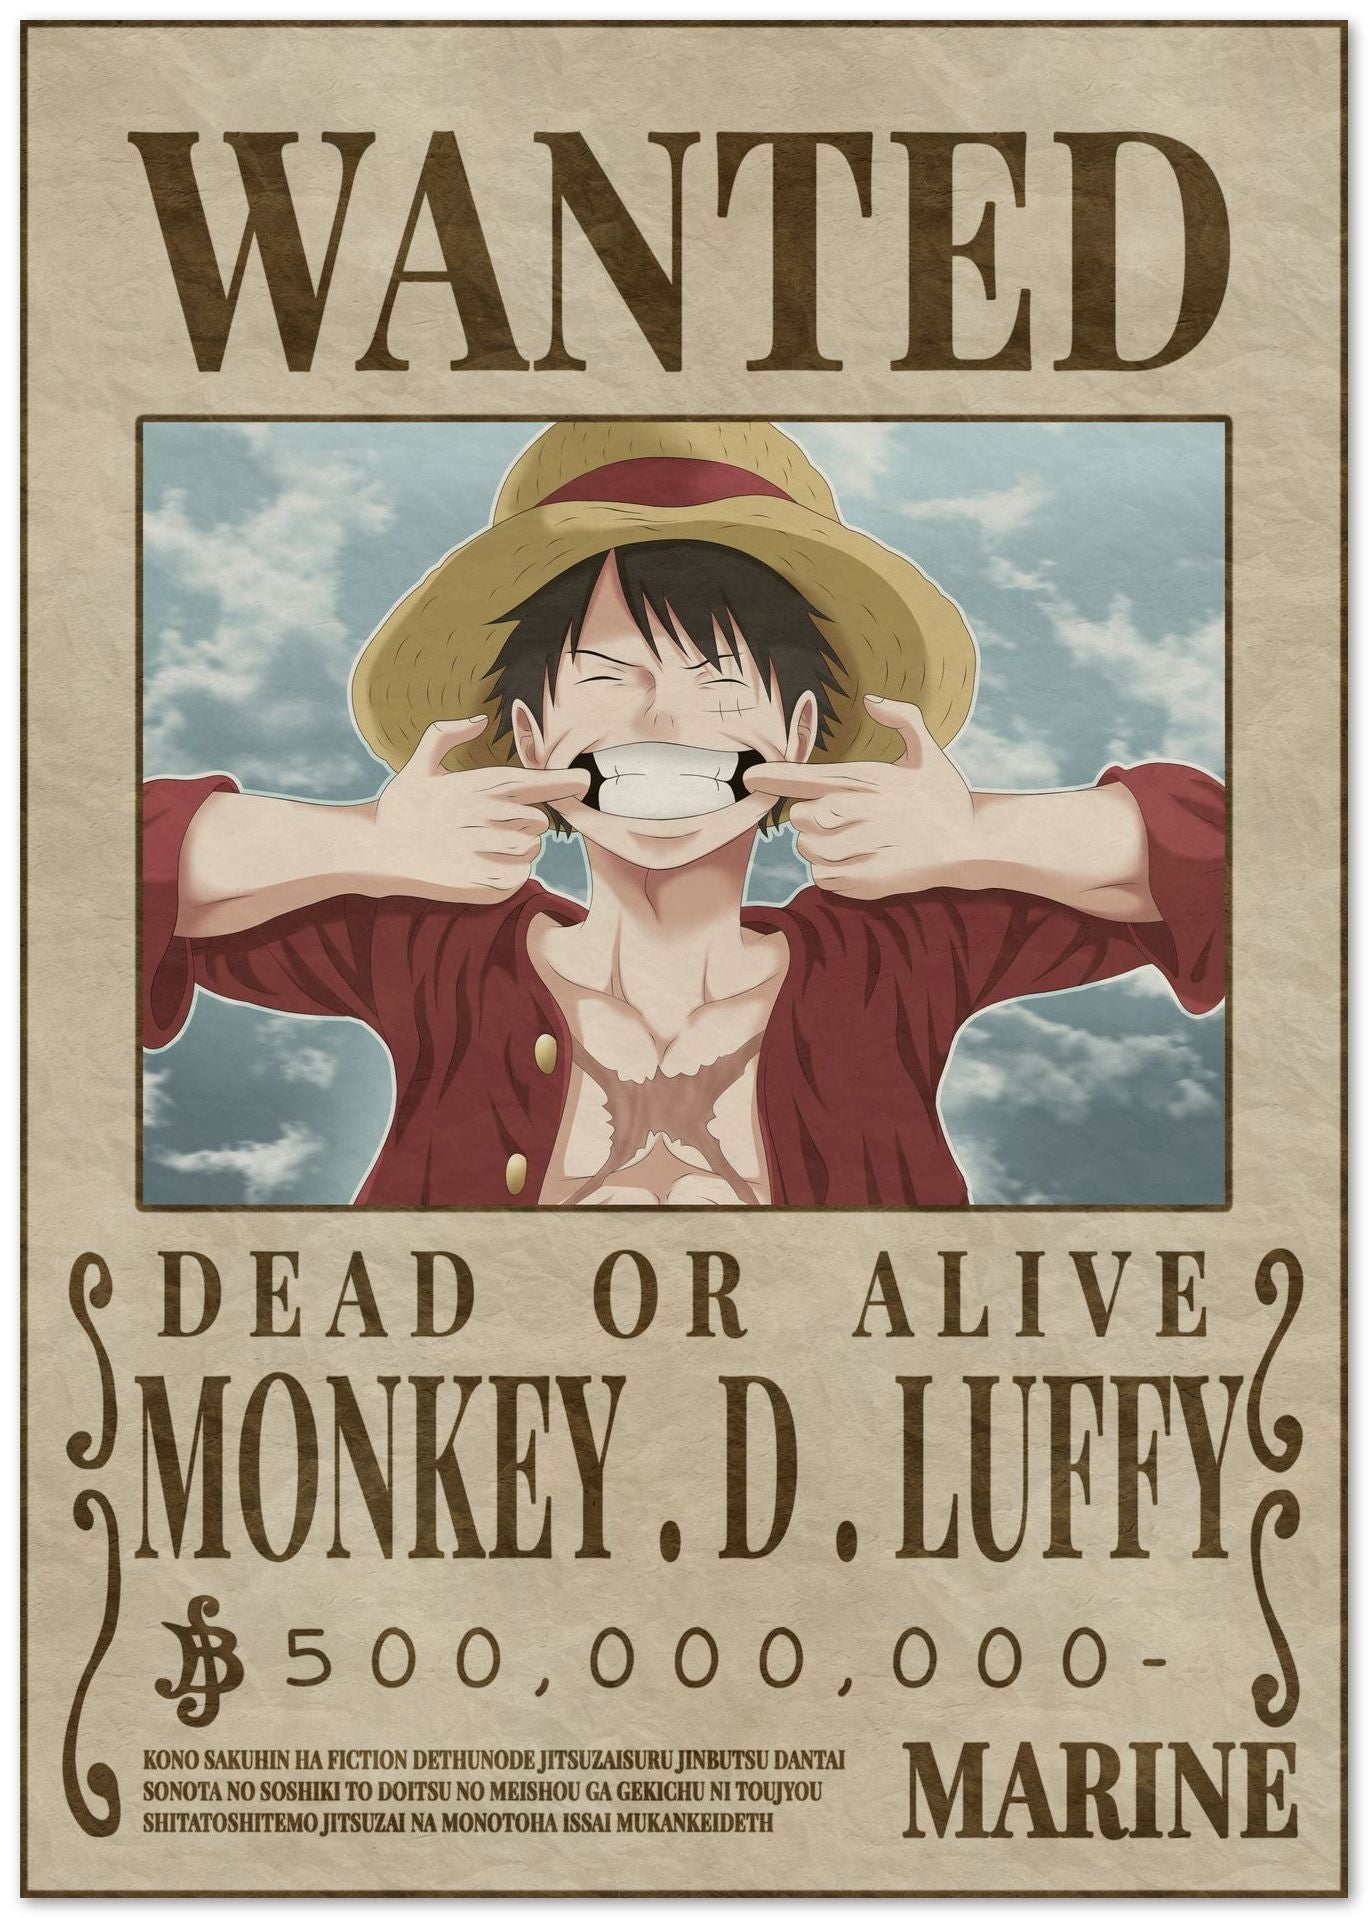 De Luffy Wanted Poster - @CupSturt